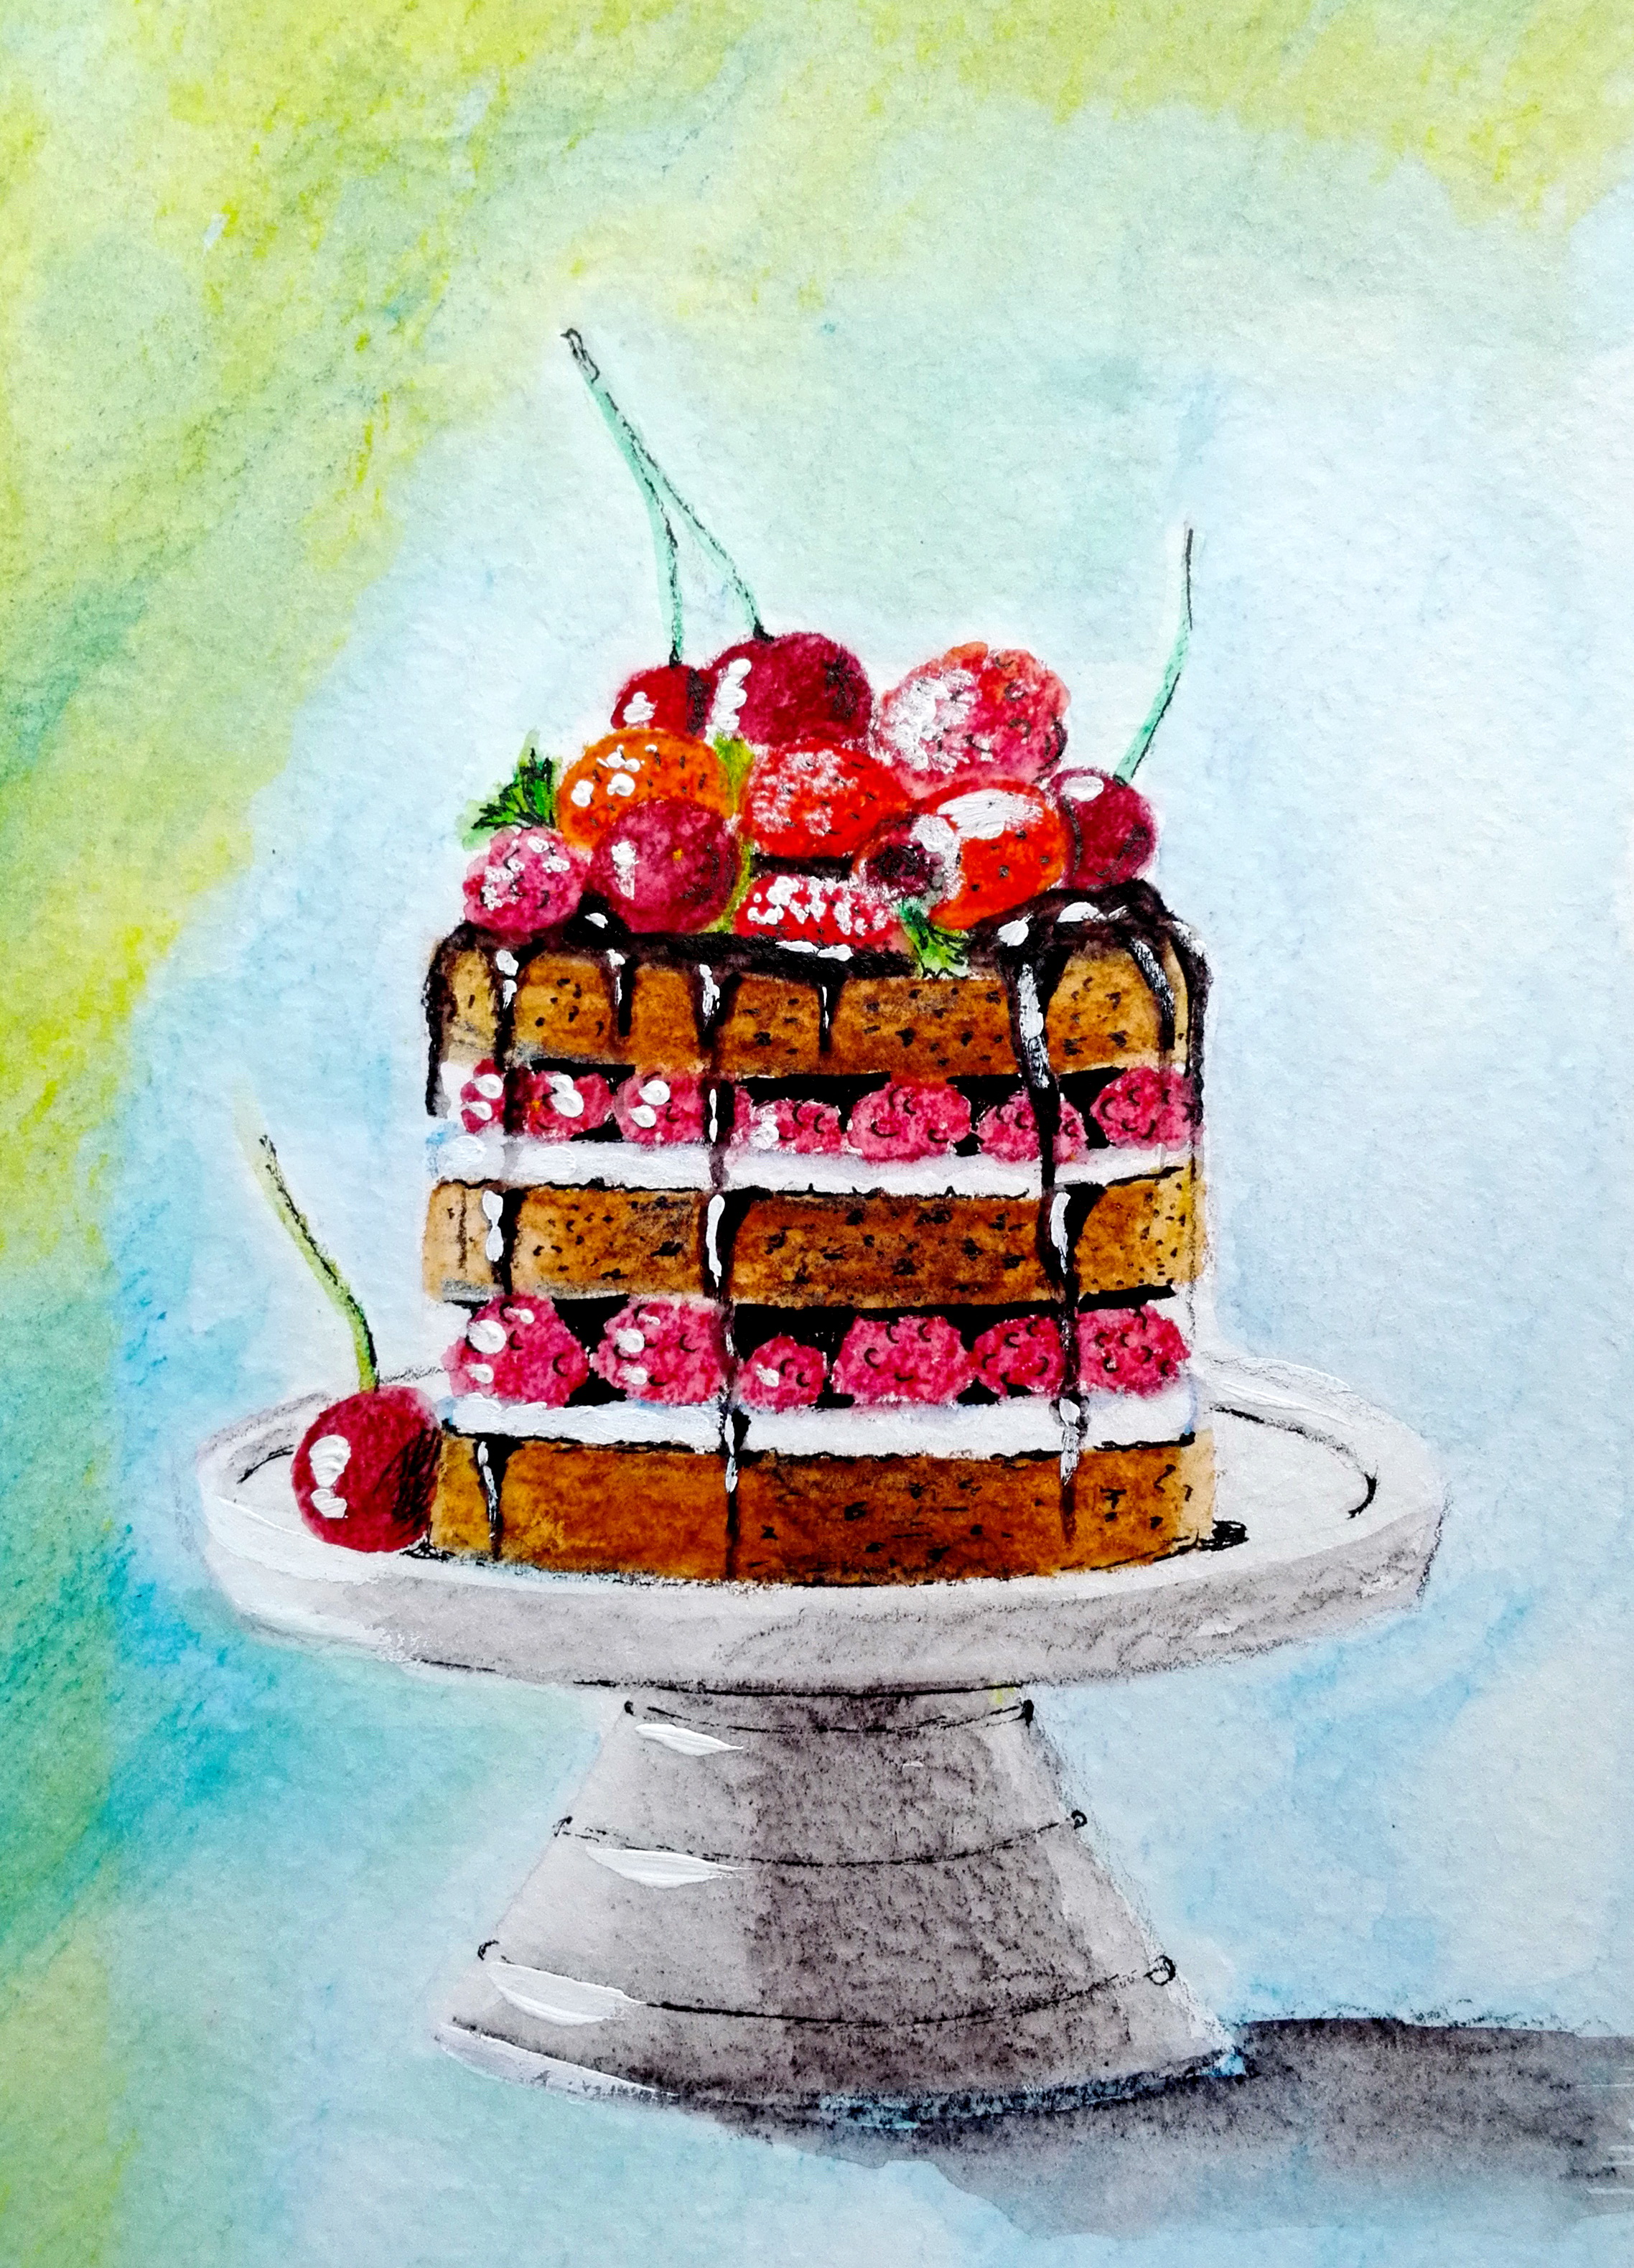 Торт с акварельными красками